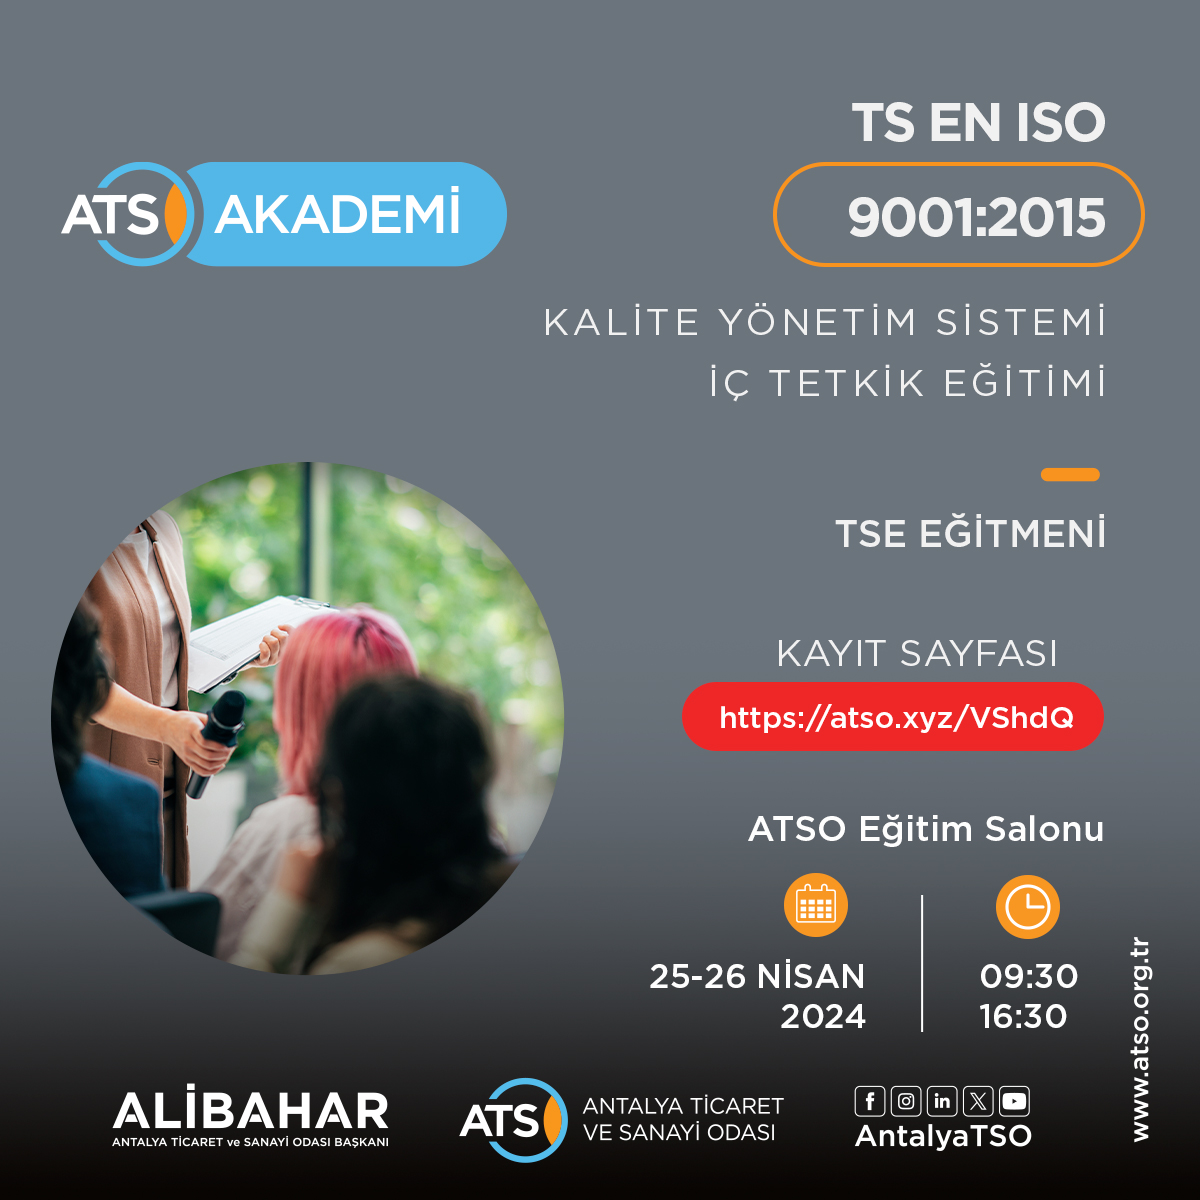 ATSO Akademi ve Türk Standartları Enstitüsü işbirliğinde düzenlenecek olan “TS EN ISO 9001:2015 Kalite Yönetim Sistemi İç Tetkik Eğitimi”; 25-26 Nisan 2024 tarihlerinde ve 09:30-16:30 saatleri arasında, Odamız Eğitim Salonu'nda gerçekleştirilecektir.